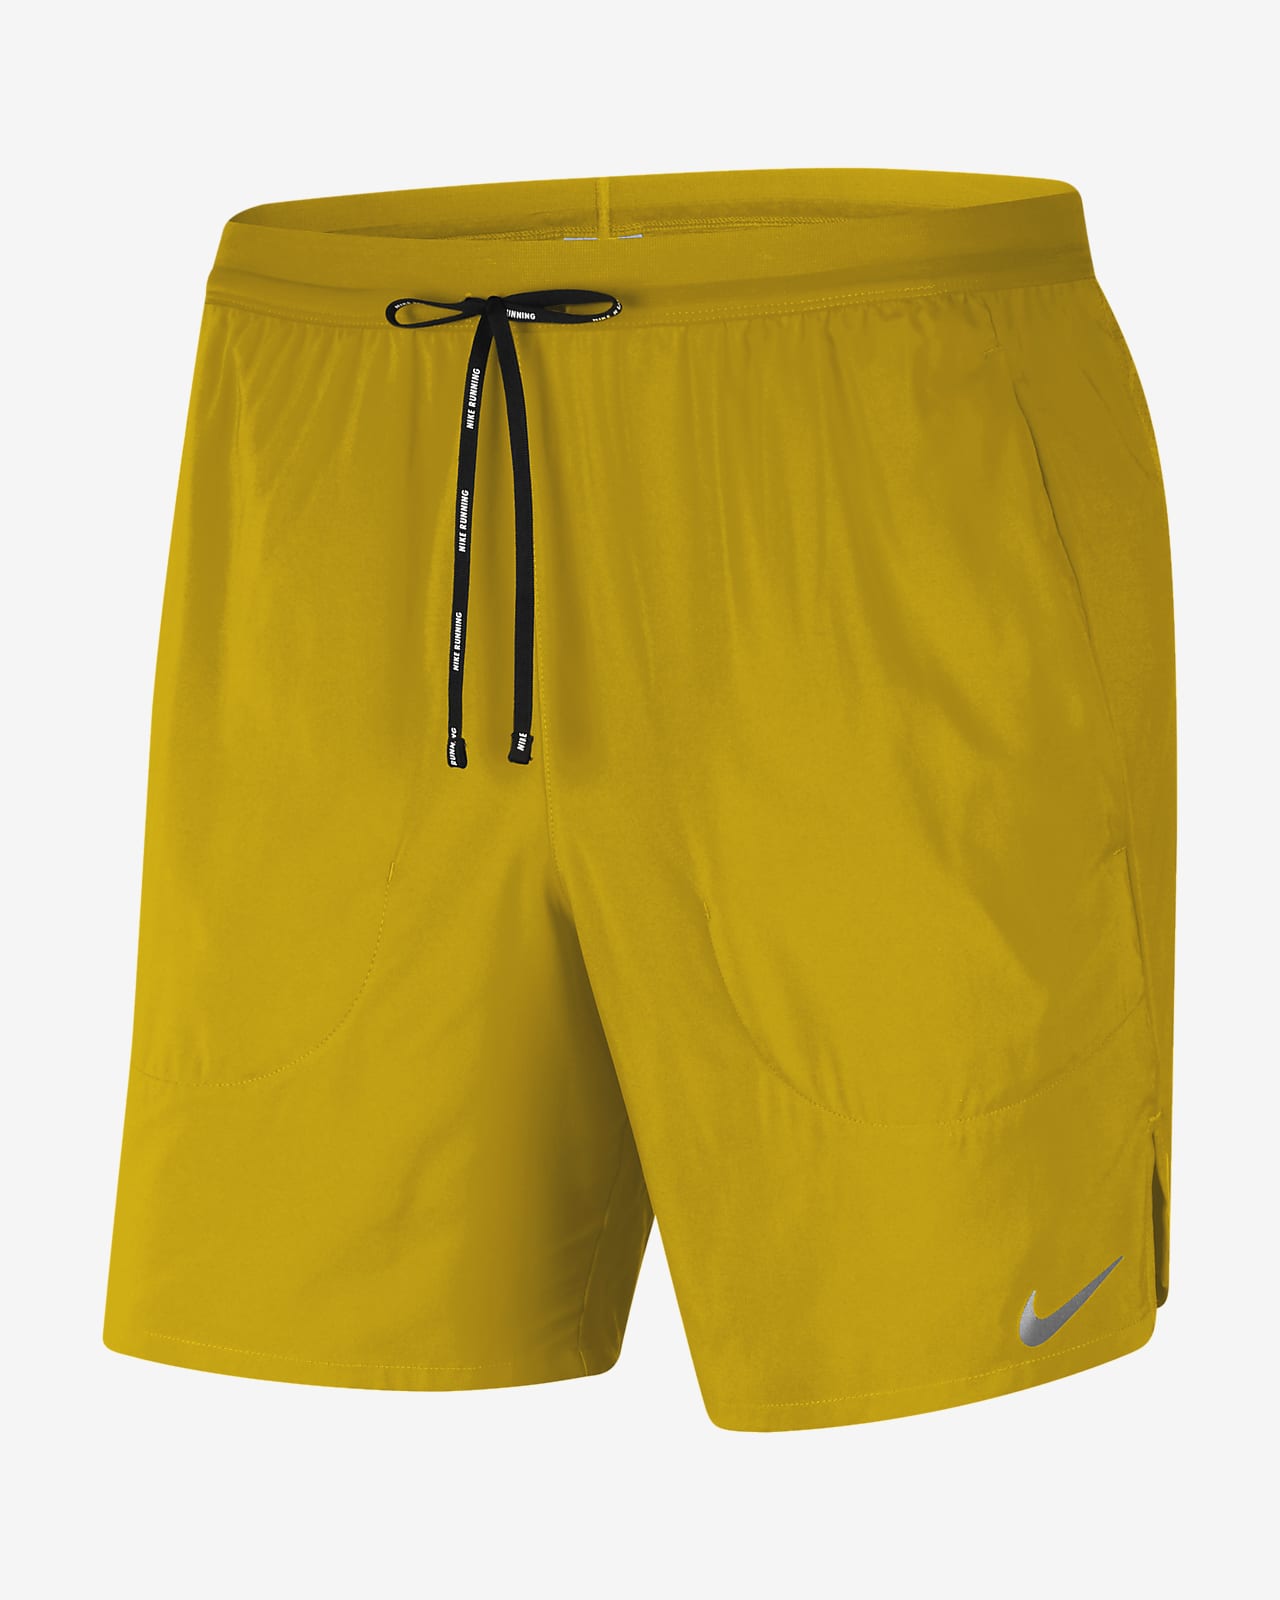 yellow nike running shorts